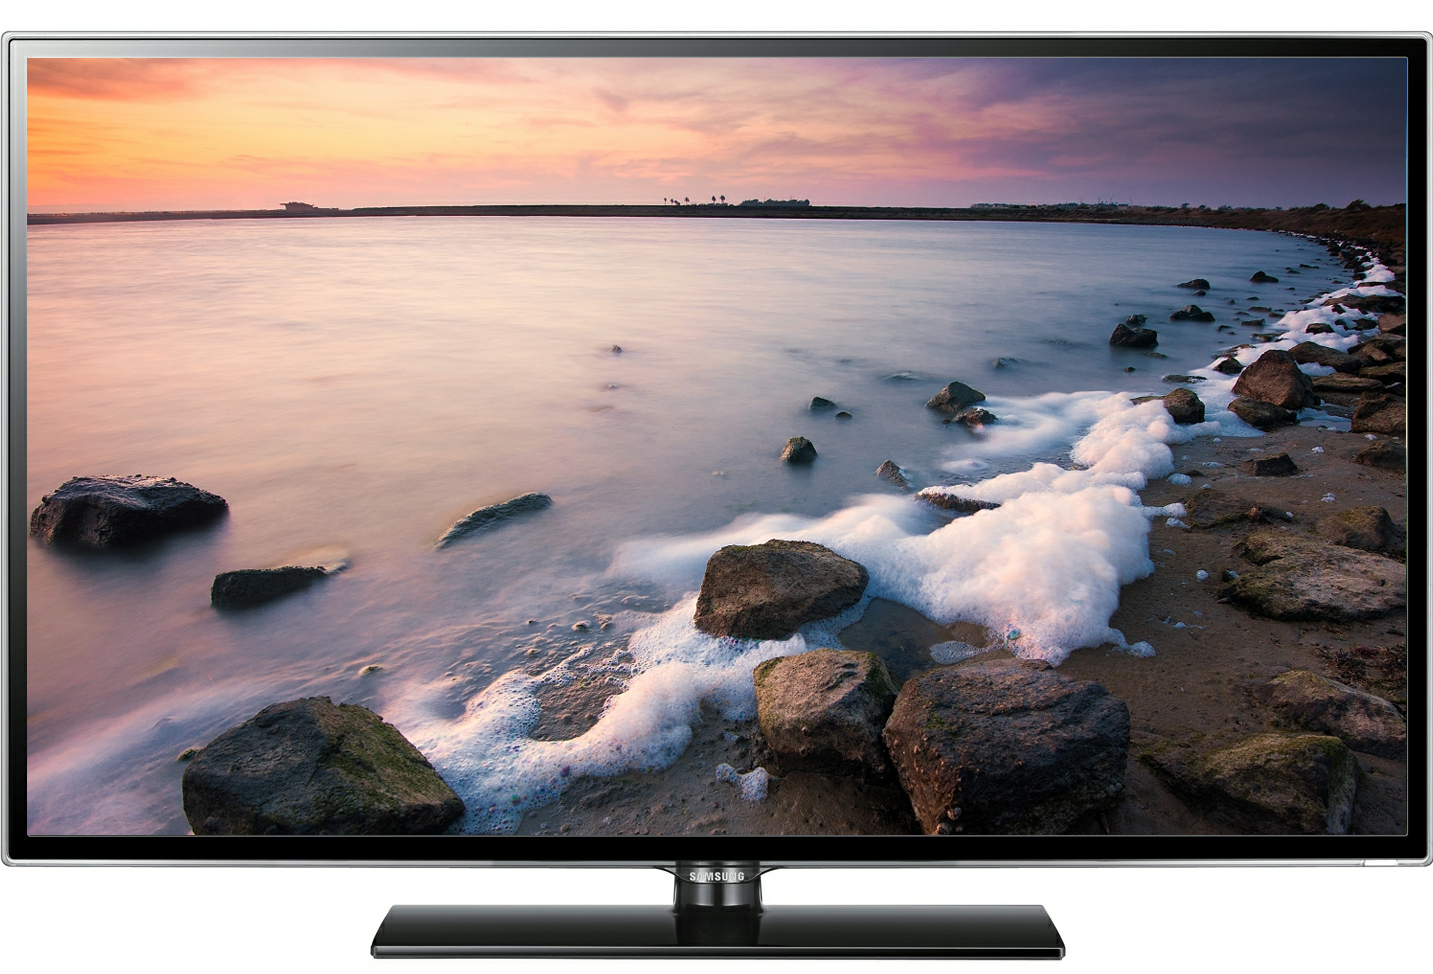 Samsung ES5600 là mẫu tivi thông minh giá rẻ có giá bán thuộc hàng tốt nhất của Samsung